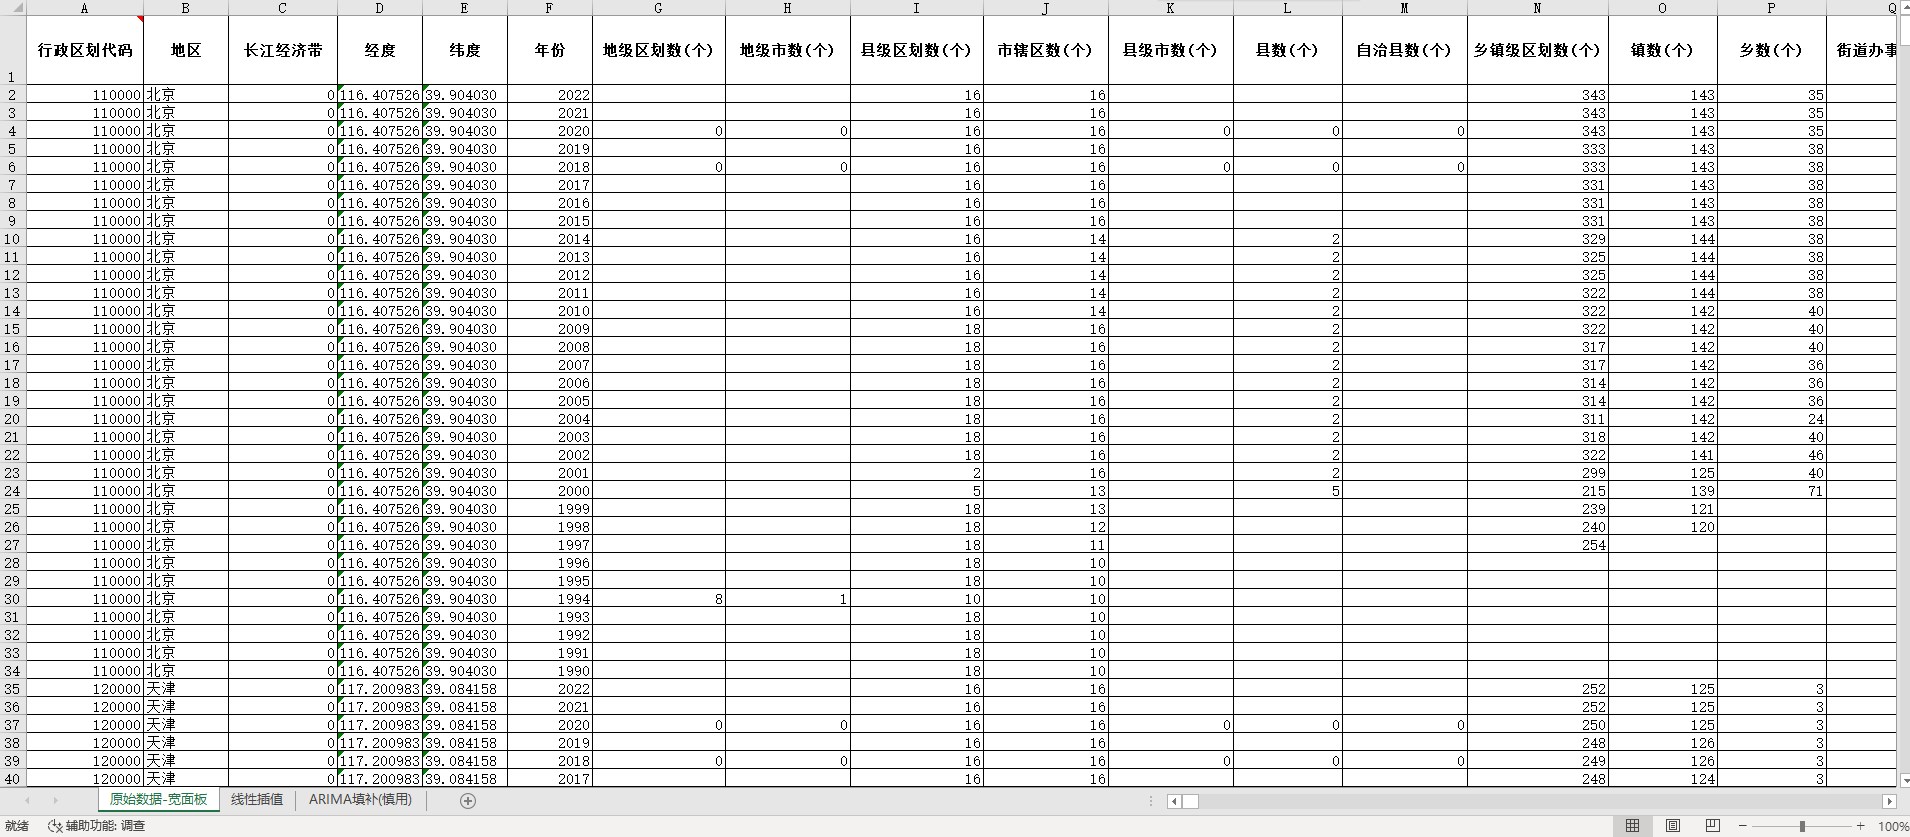 中国省级数据库 线性插值、ARIMA填补（面板数据1990-2022年）